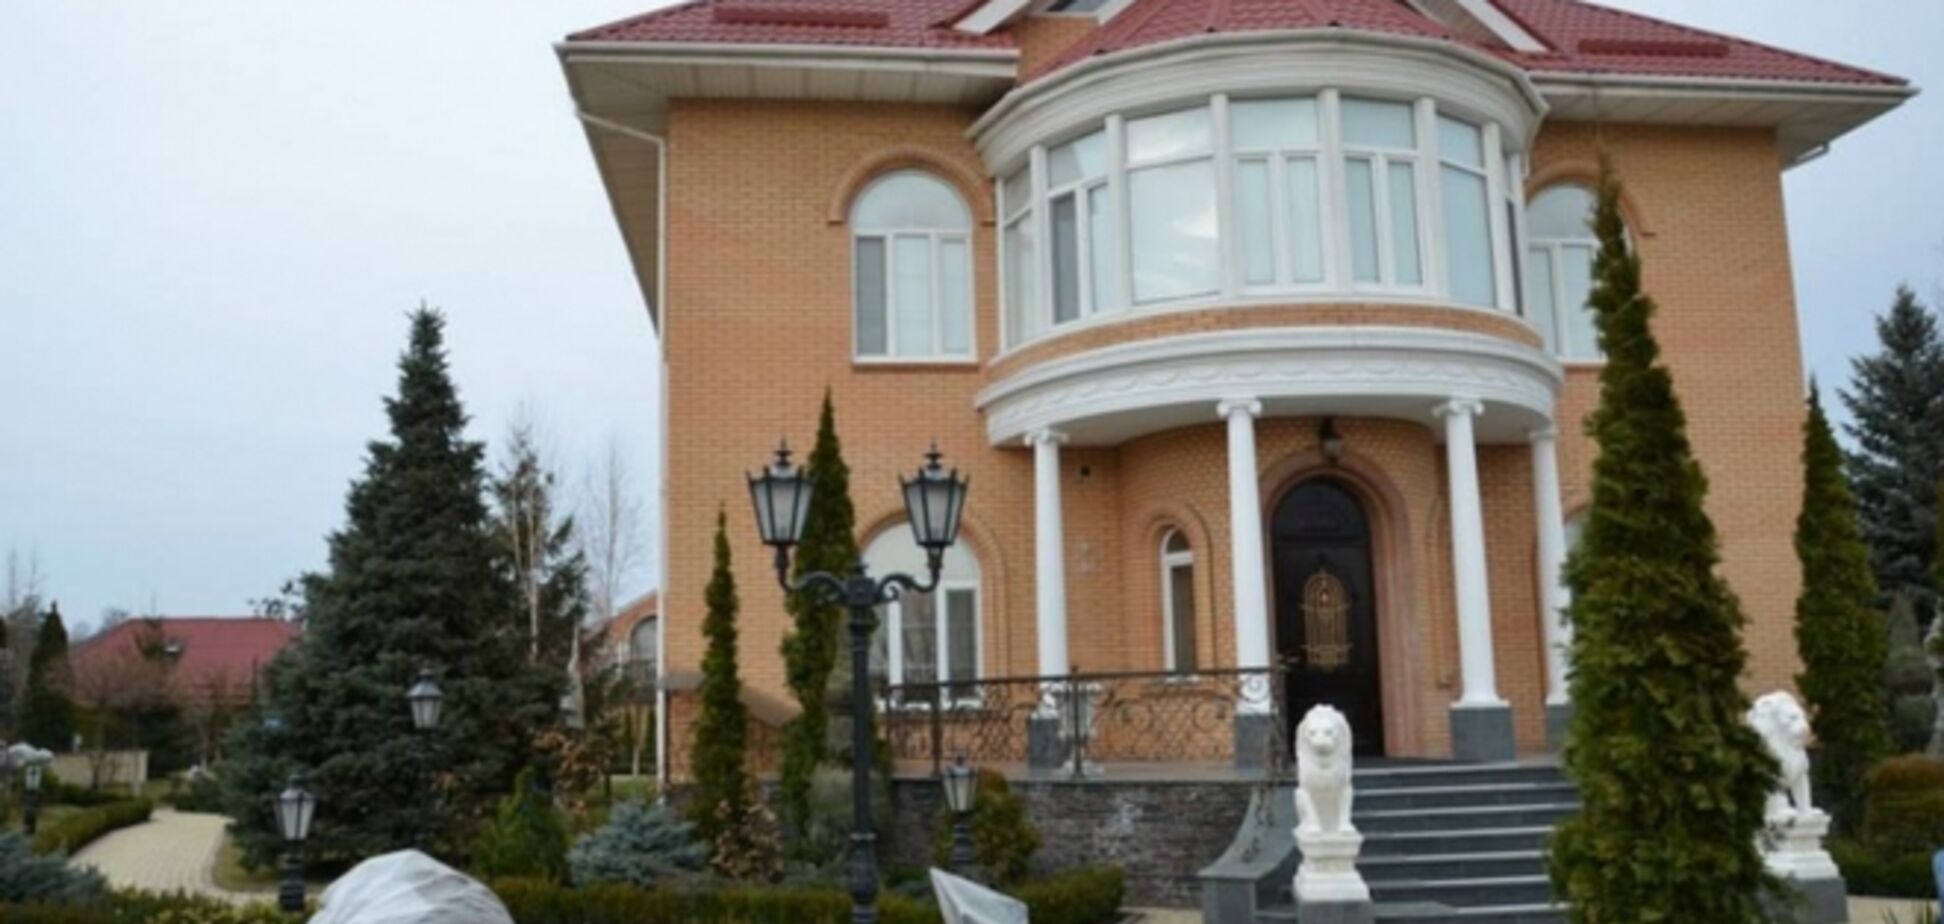 Поместье Захарченко сняла большая семья, а дом Пшонки охраняет милиция